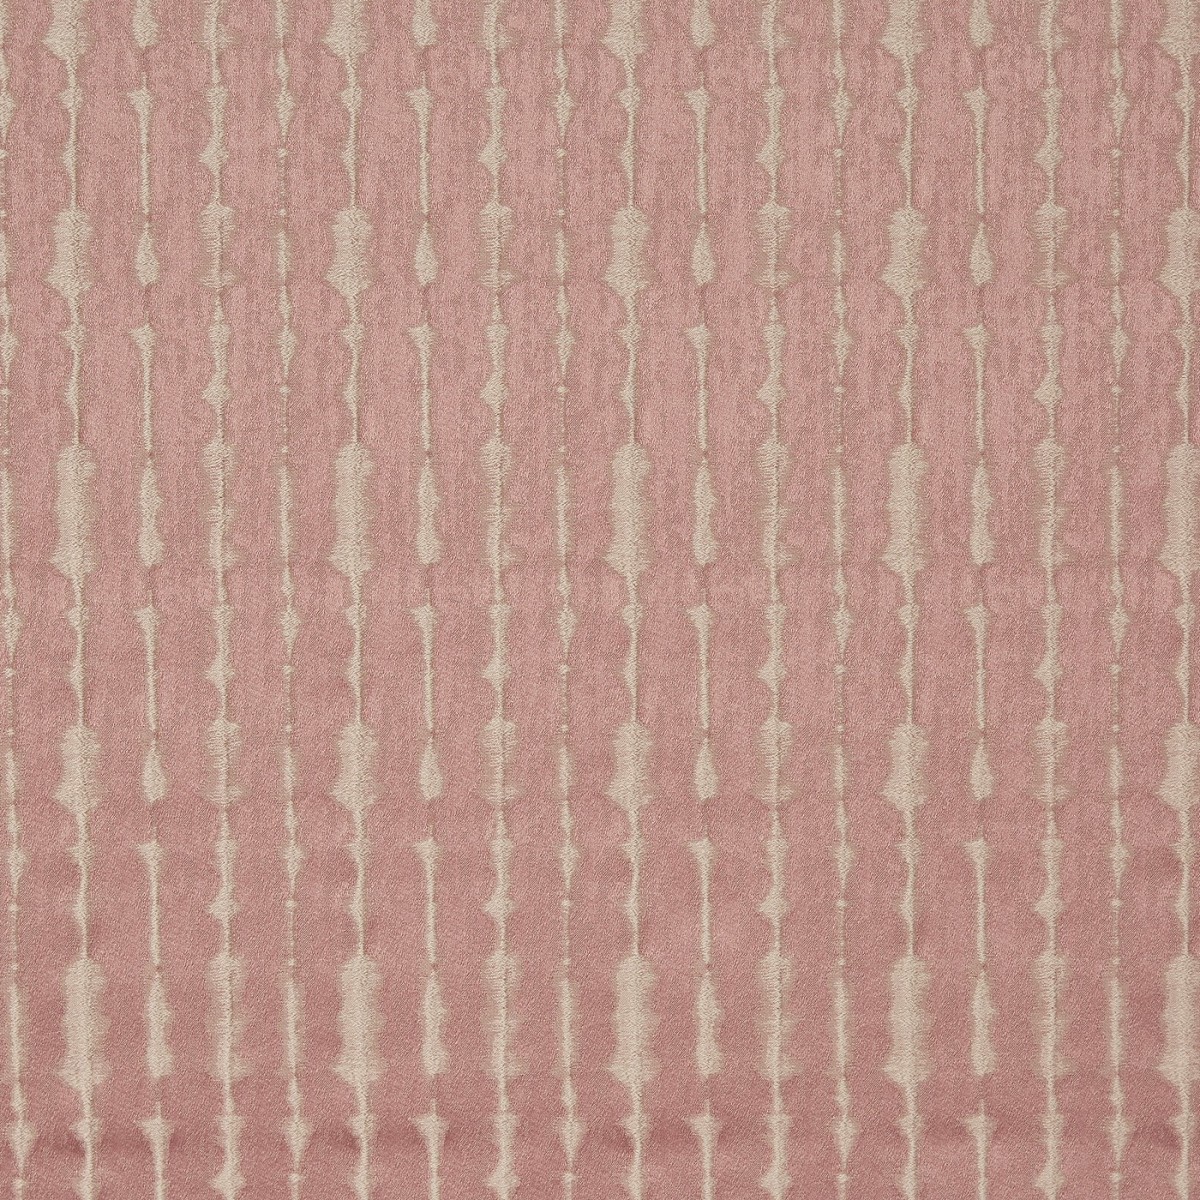 Constellation Quartz Fabric by Prestigious Textiles